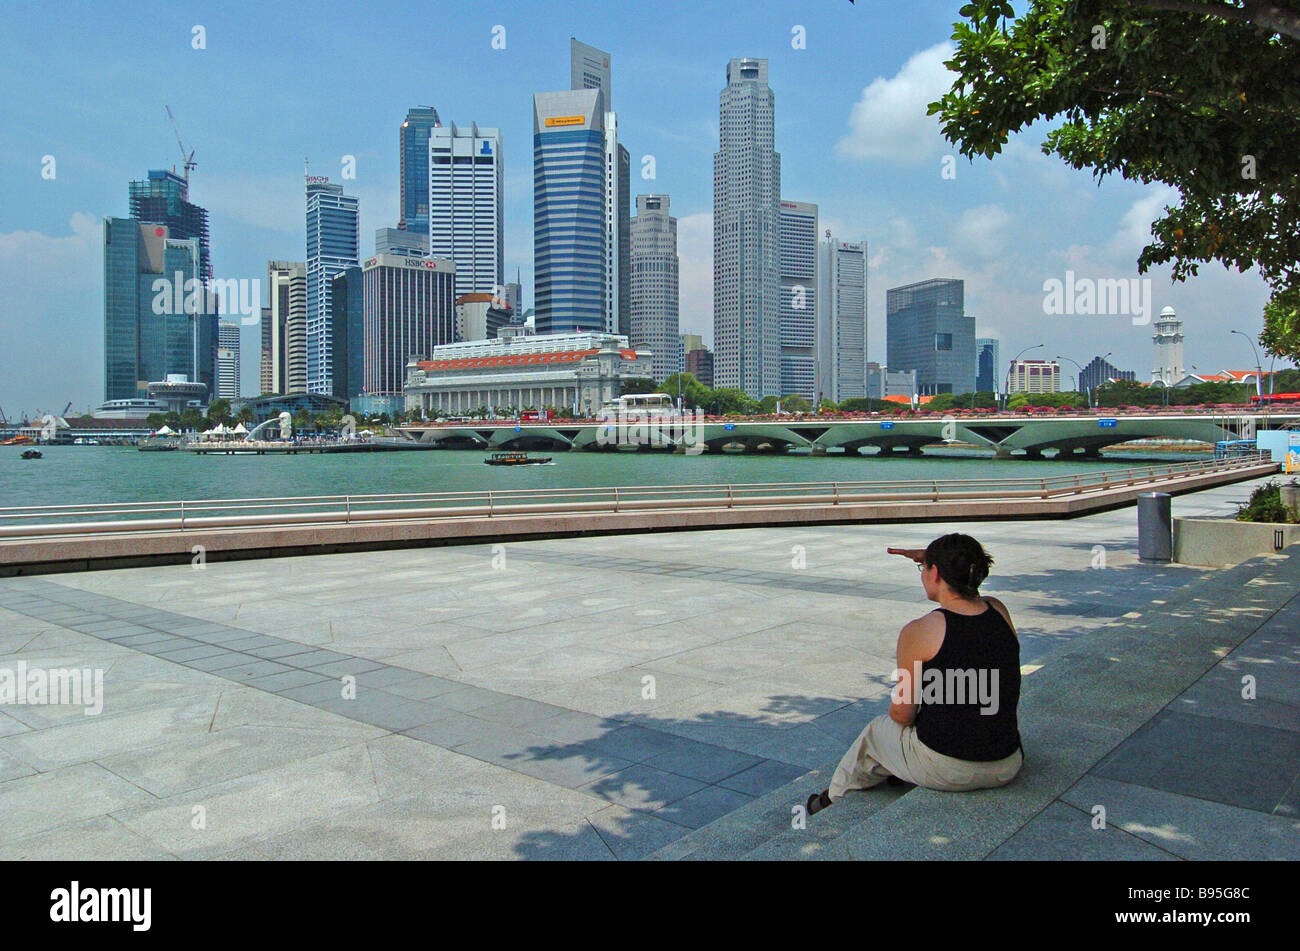 Singapour CDB Financial district skyline vu de l'autre côté de la rivière. Banque D'Images